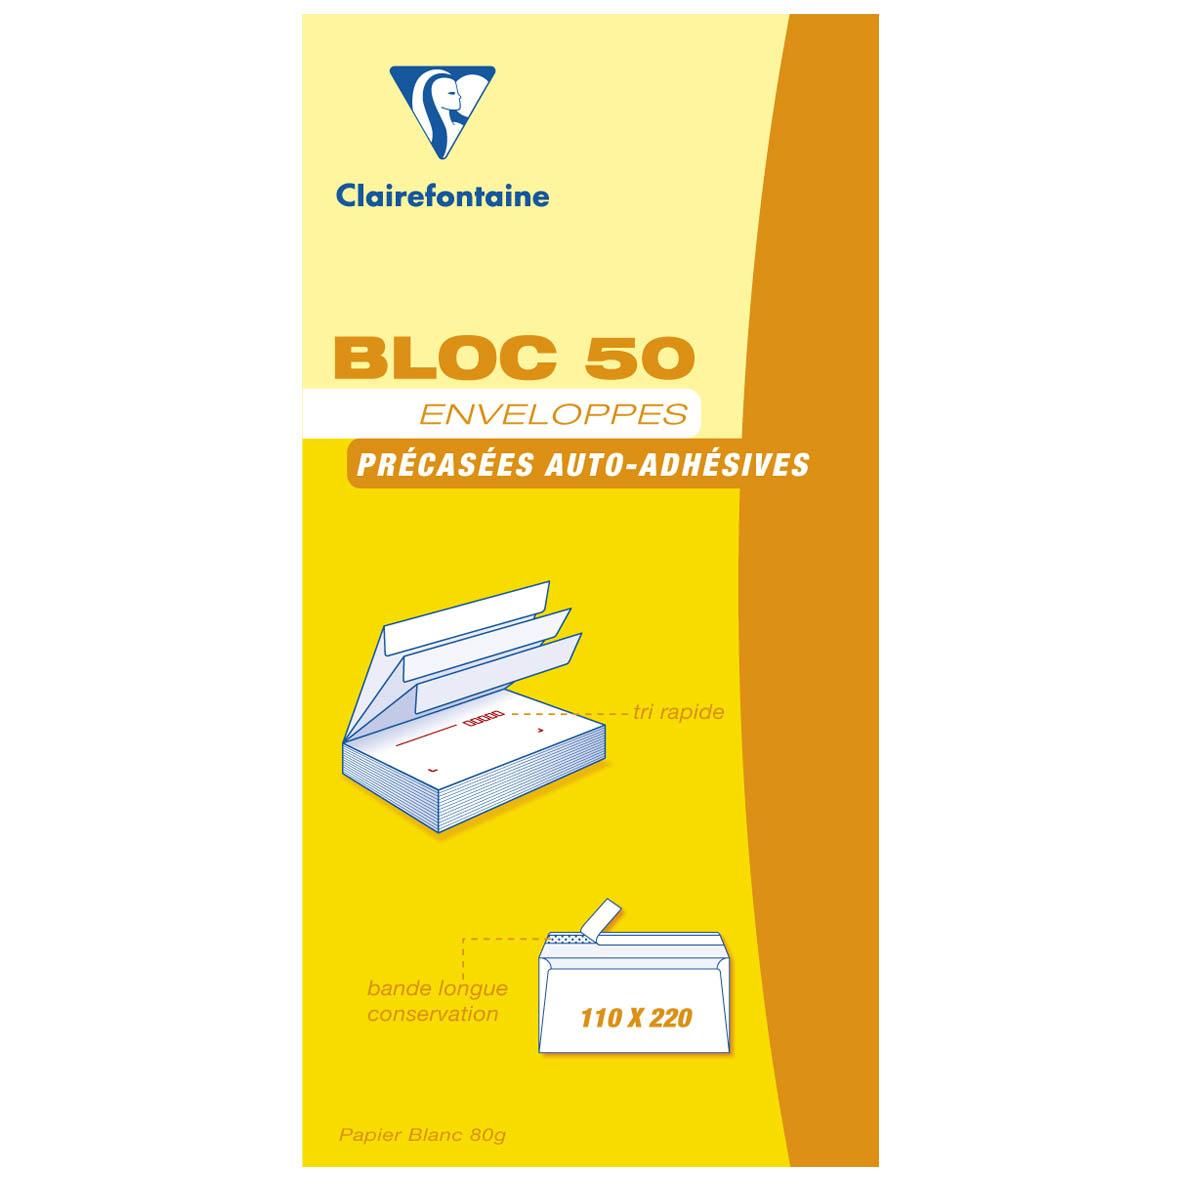 Acheter Clairefontaine 50 Enveloppes précasées auto-adhésivesen bloc